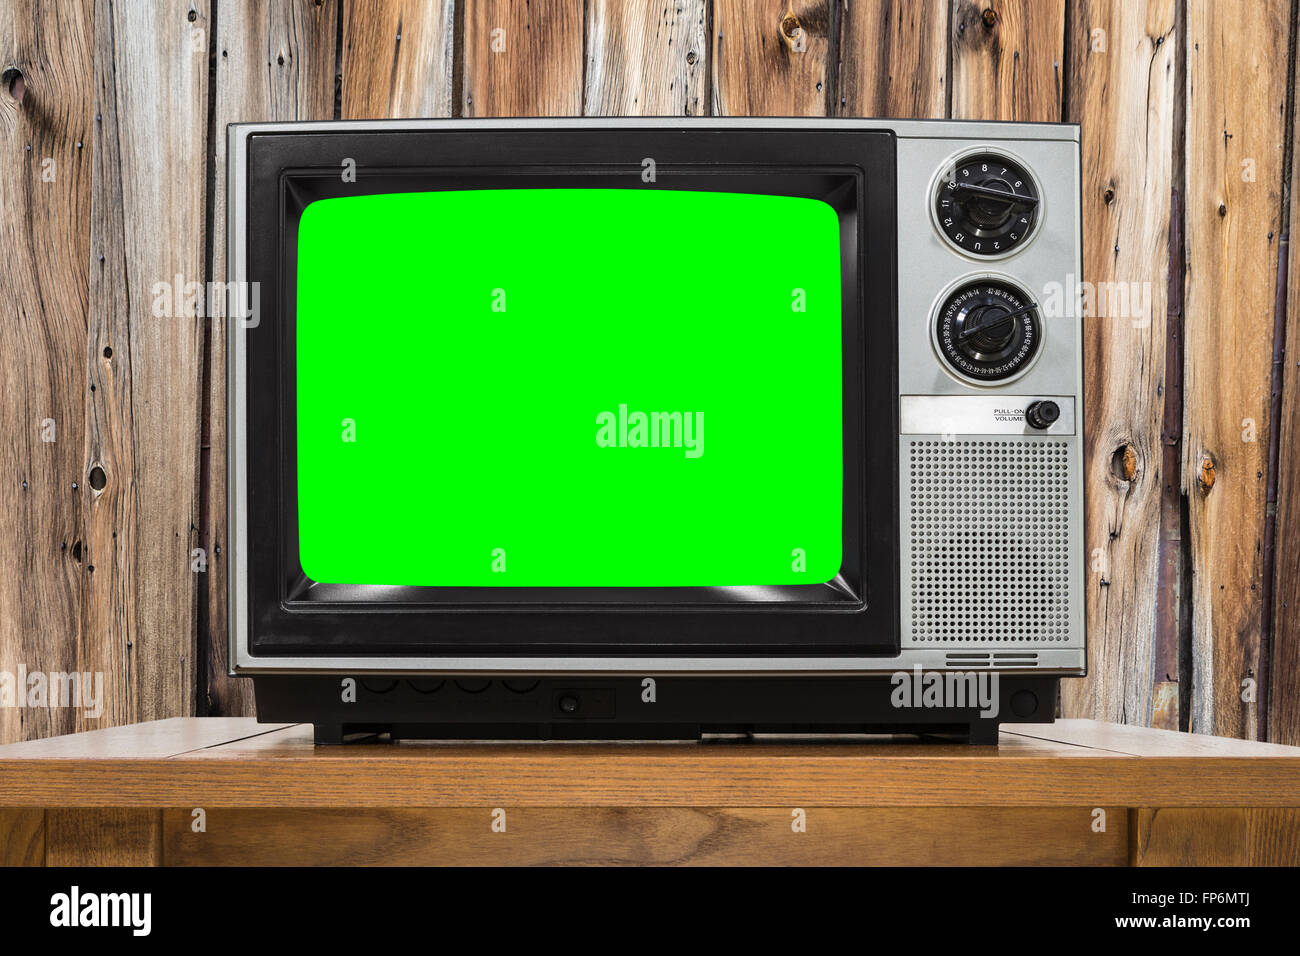 La télévision analogique sur le mur en bois et incrustation couleur écran vert. Banque D'Images